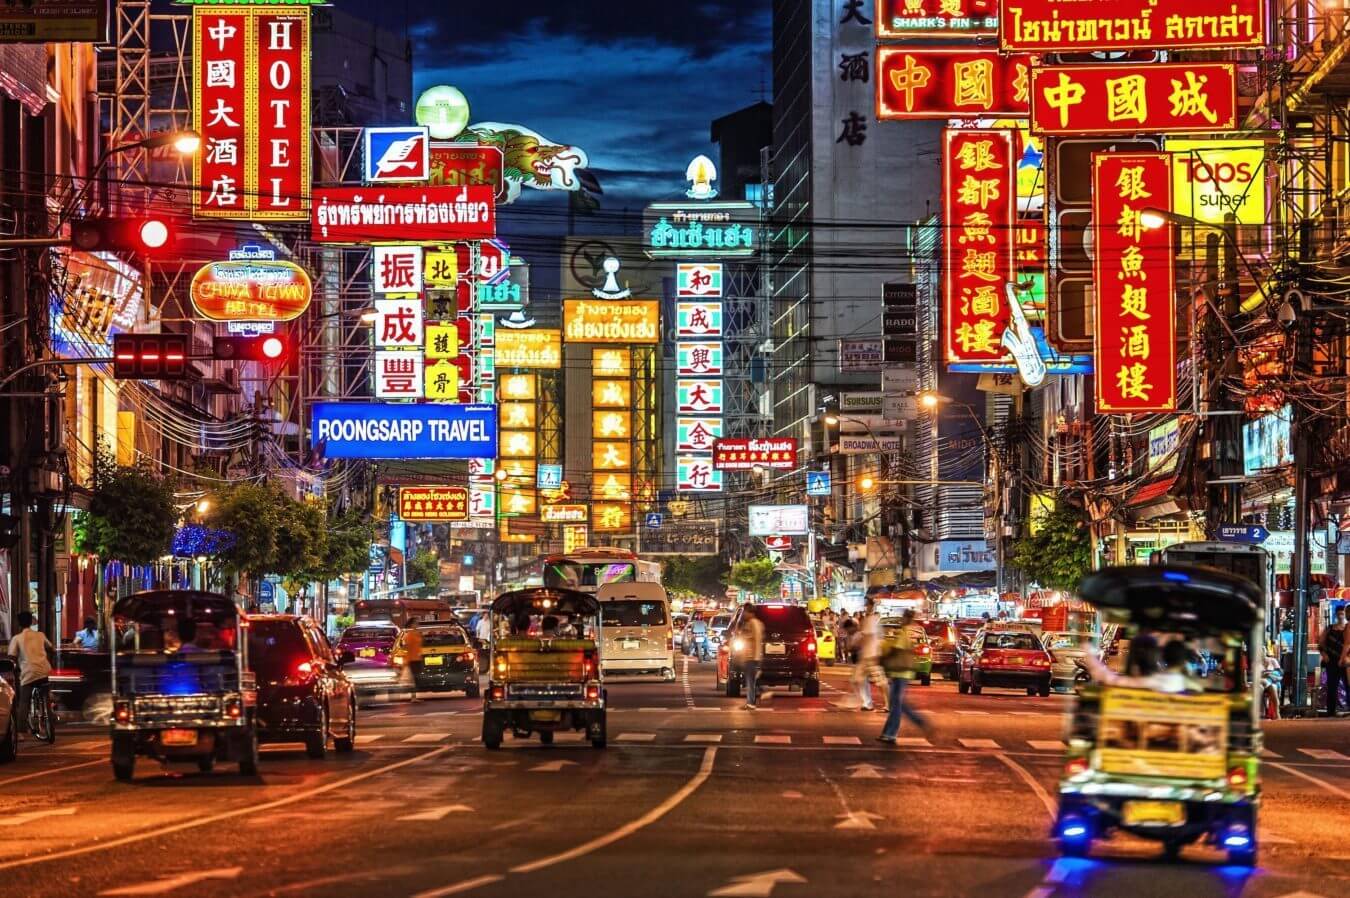 Du lịch Đài Loan mất bao nhiêu tiền